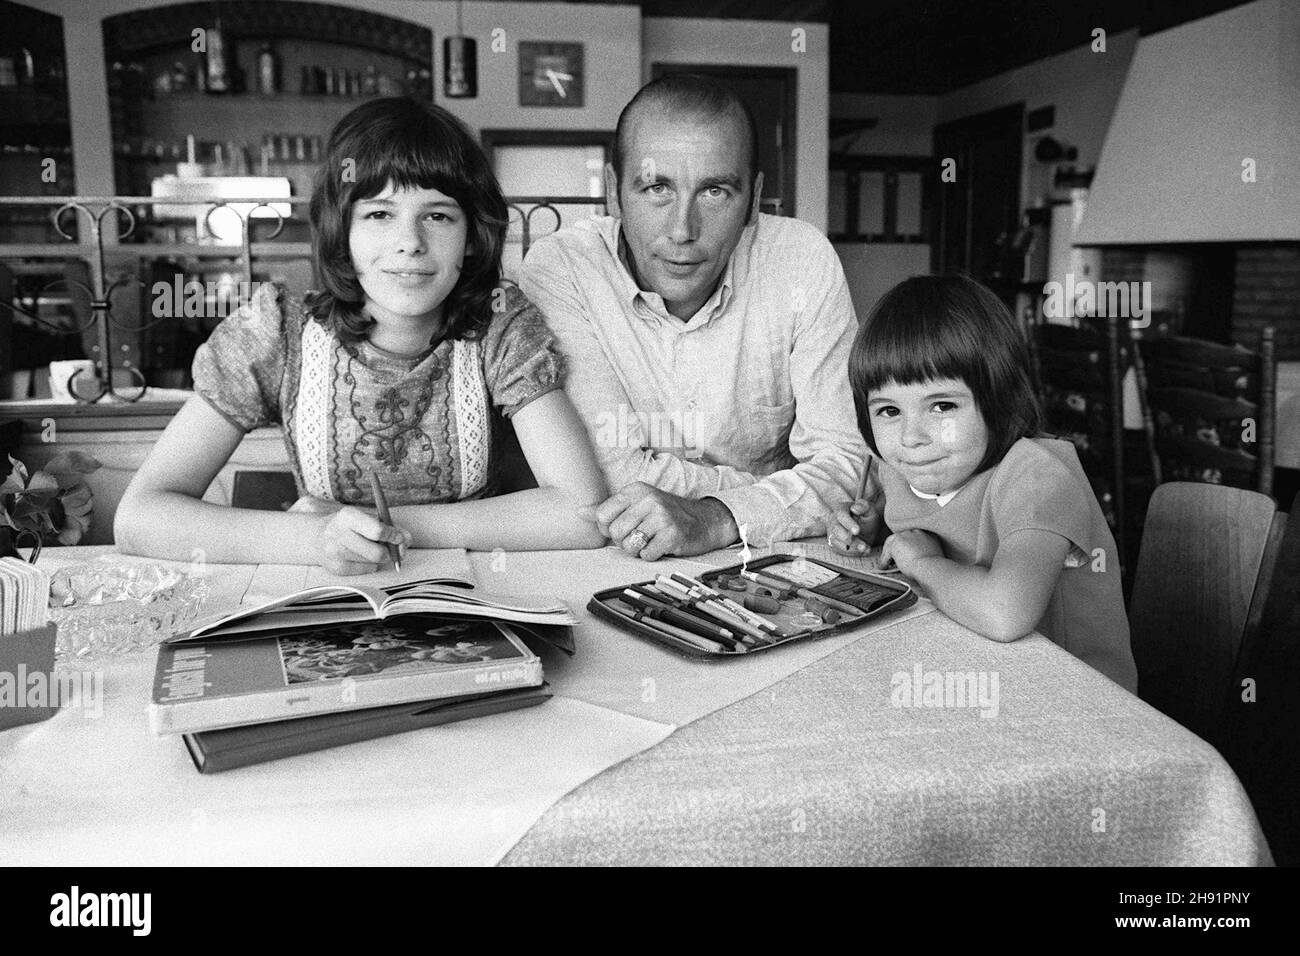 Horst Eckel è morto oggi (3 dicembre 2021)! Horst ECKEL, Germania, ex calciatore, campione del mondo di calcio dal 1954, siede al tavolo con le sue figlie Susanne e Dagmar, i bambini fanno i loro compiti, 02.25.1973. Vé¬CvC¬ Foto Stock